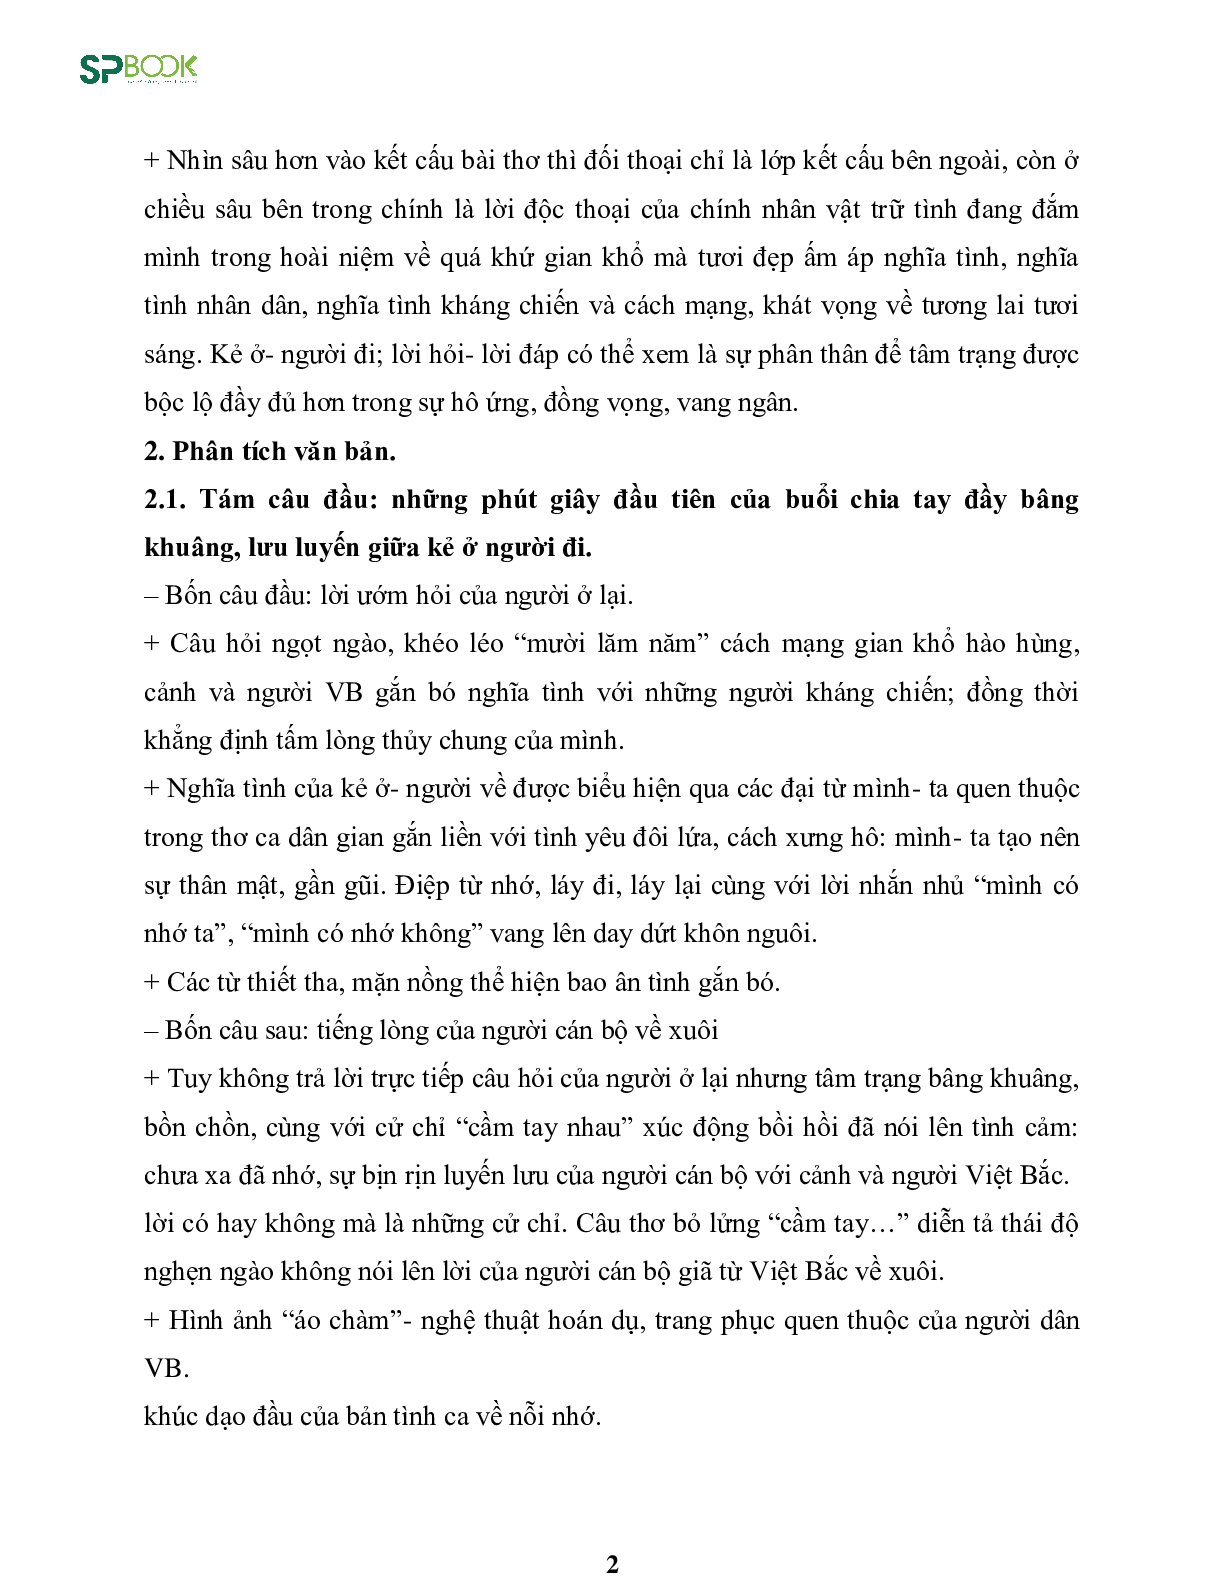 Kiến thức cơ bản và những dạng đề thi về bài Việt Bắc - Tố Hữu Văn 12 (trang 2)